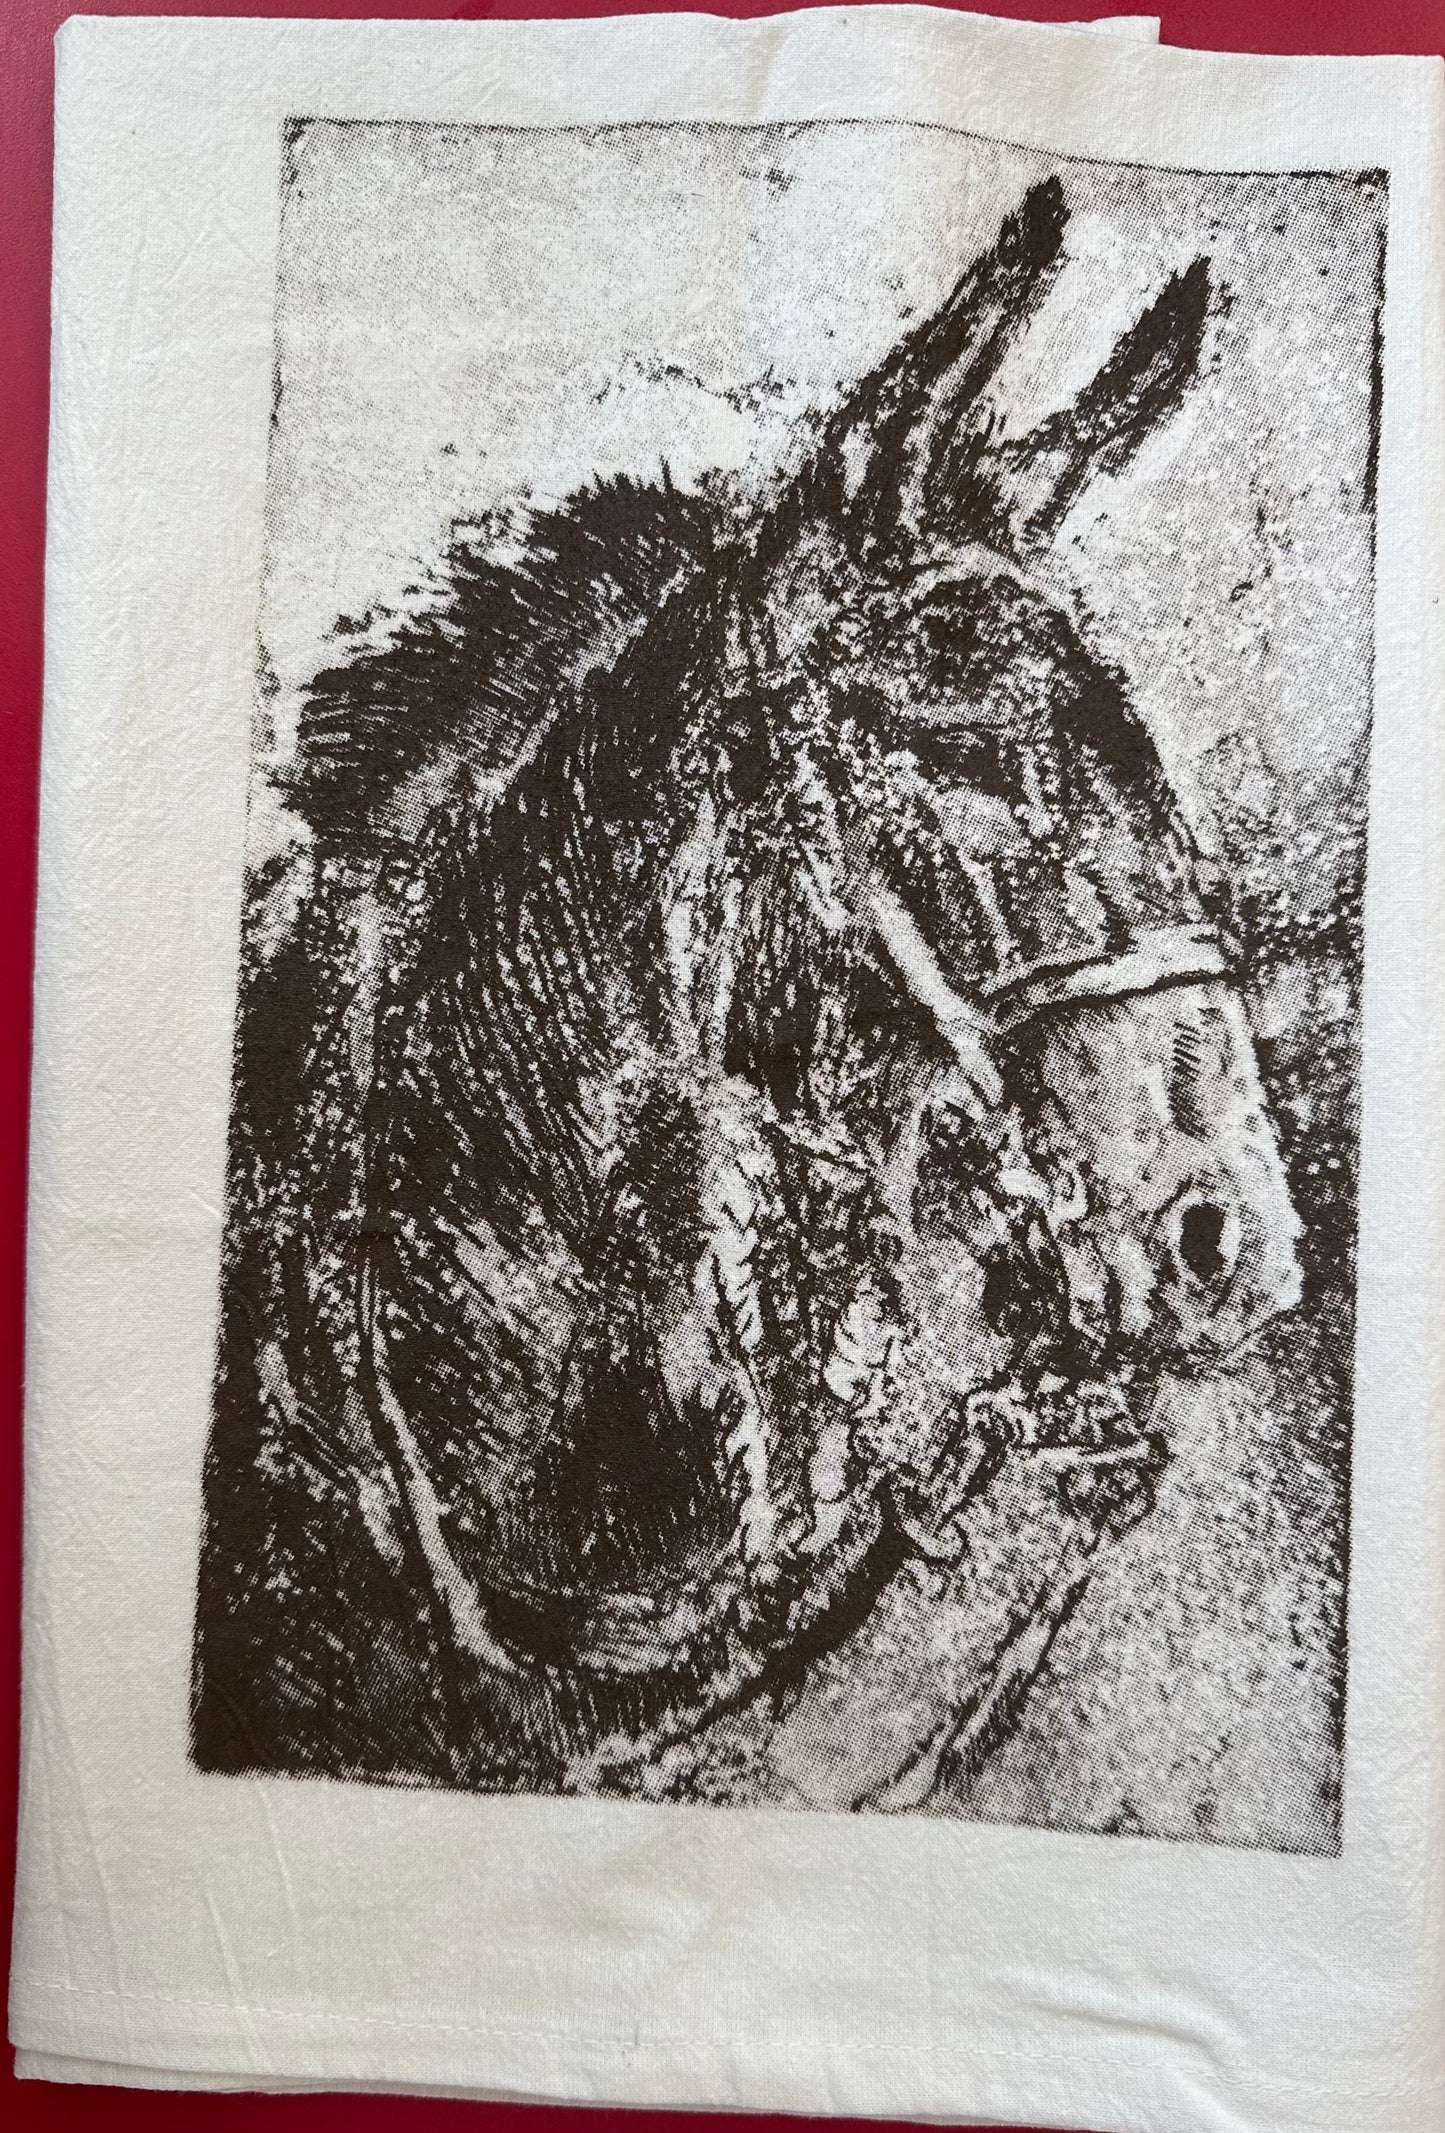 Mule screenprinted on floursack towel